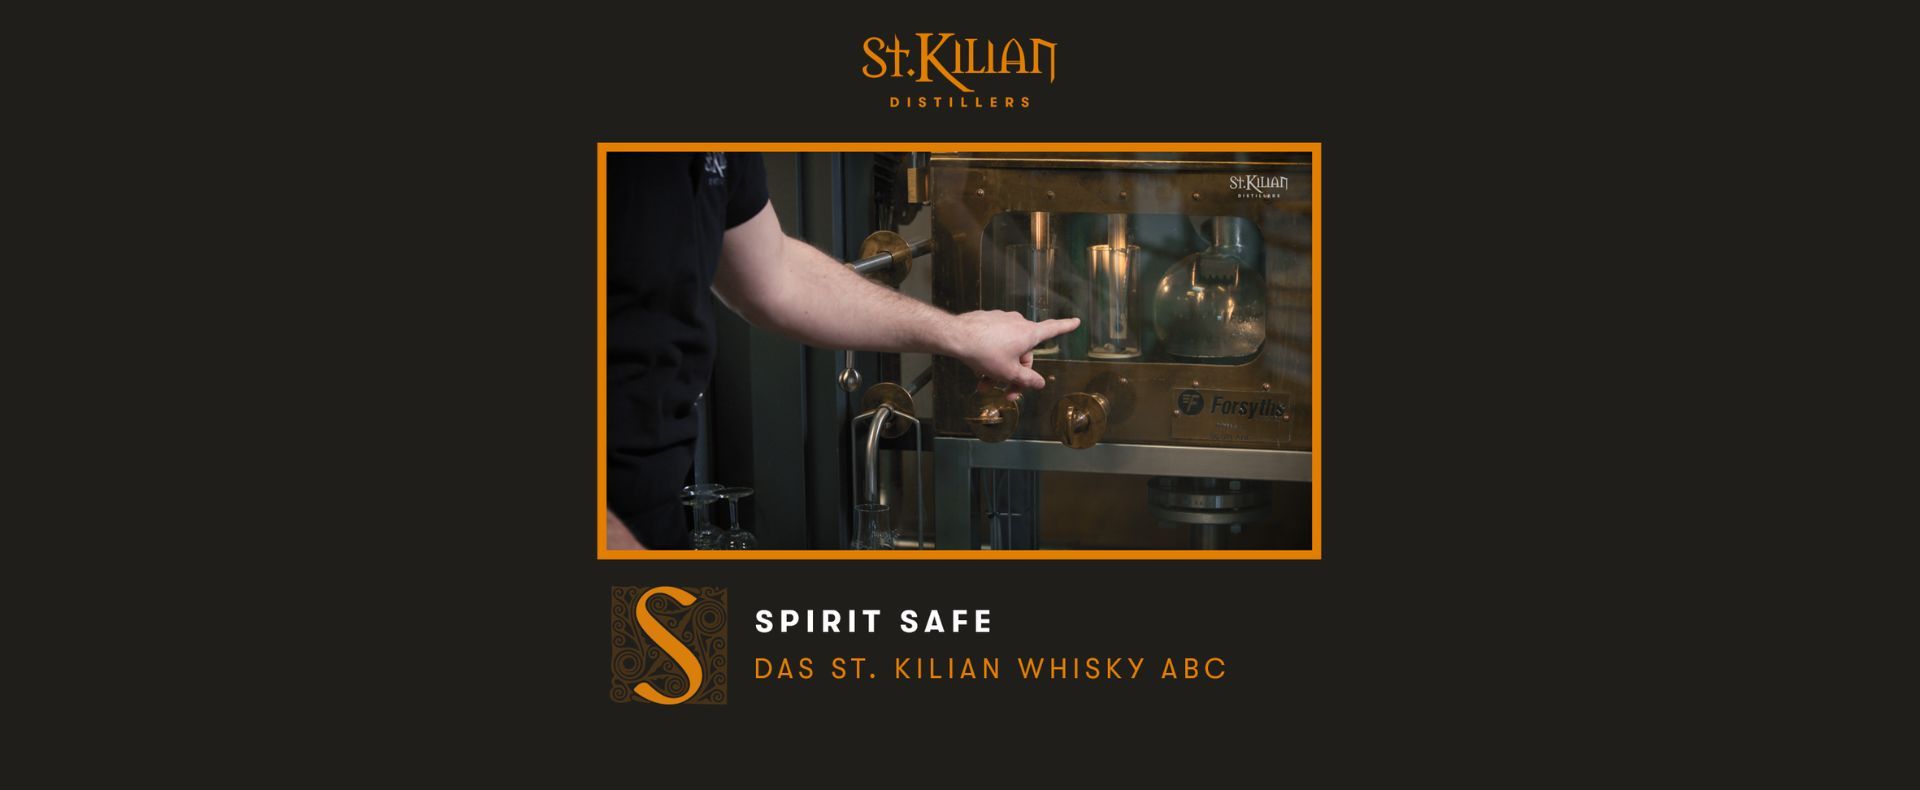 Whisky ABC - S wie Spirit Safe